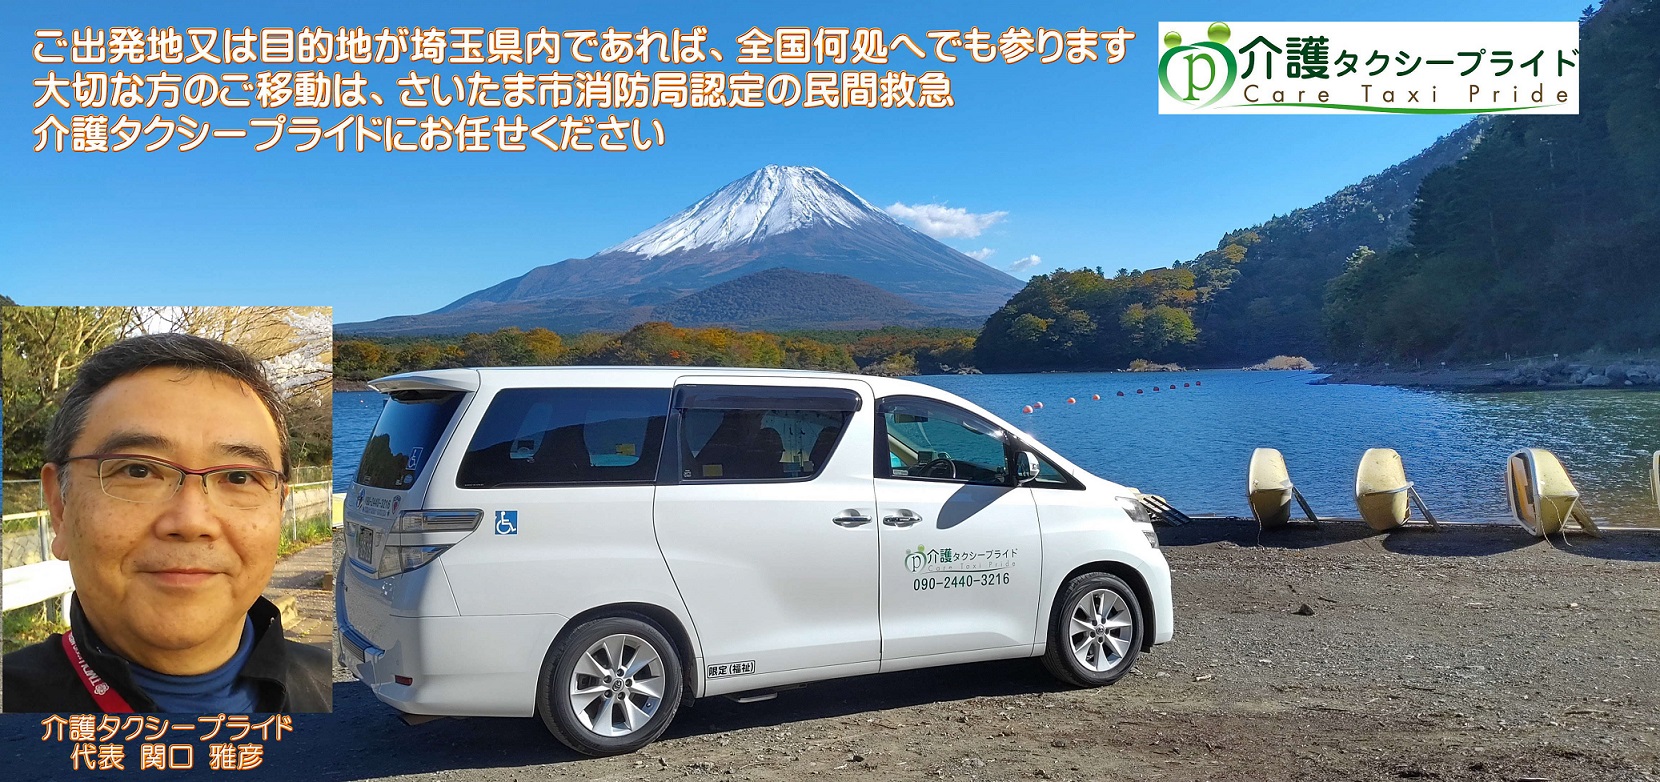 富士山を背景に代表と介護タクシー車両,ご出発地又は目的地が埼玉県内であれば全国何処へでも参ります,大切な方のご移動は介護タクシープライドにお任せください